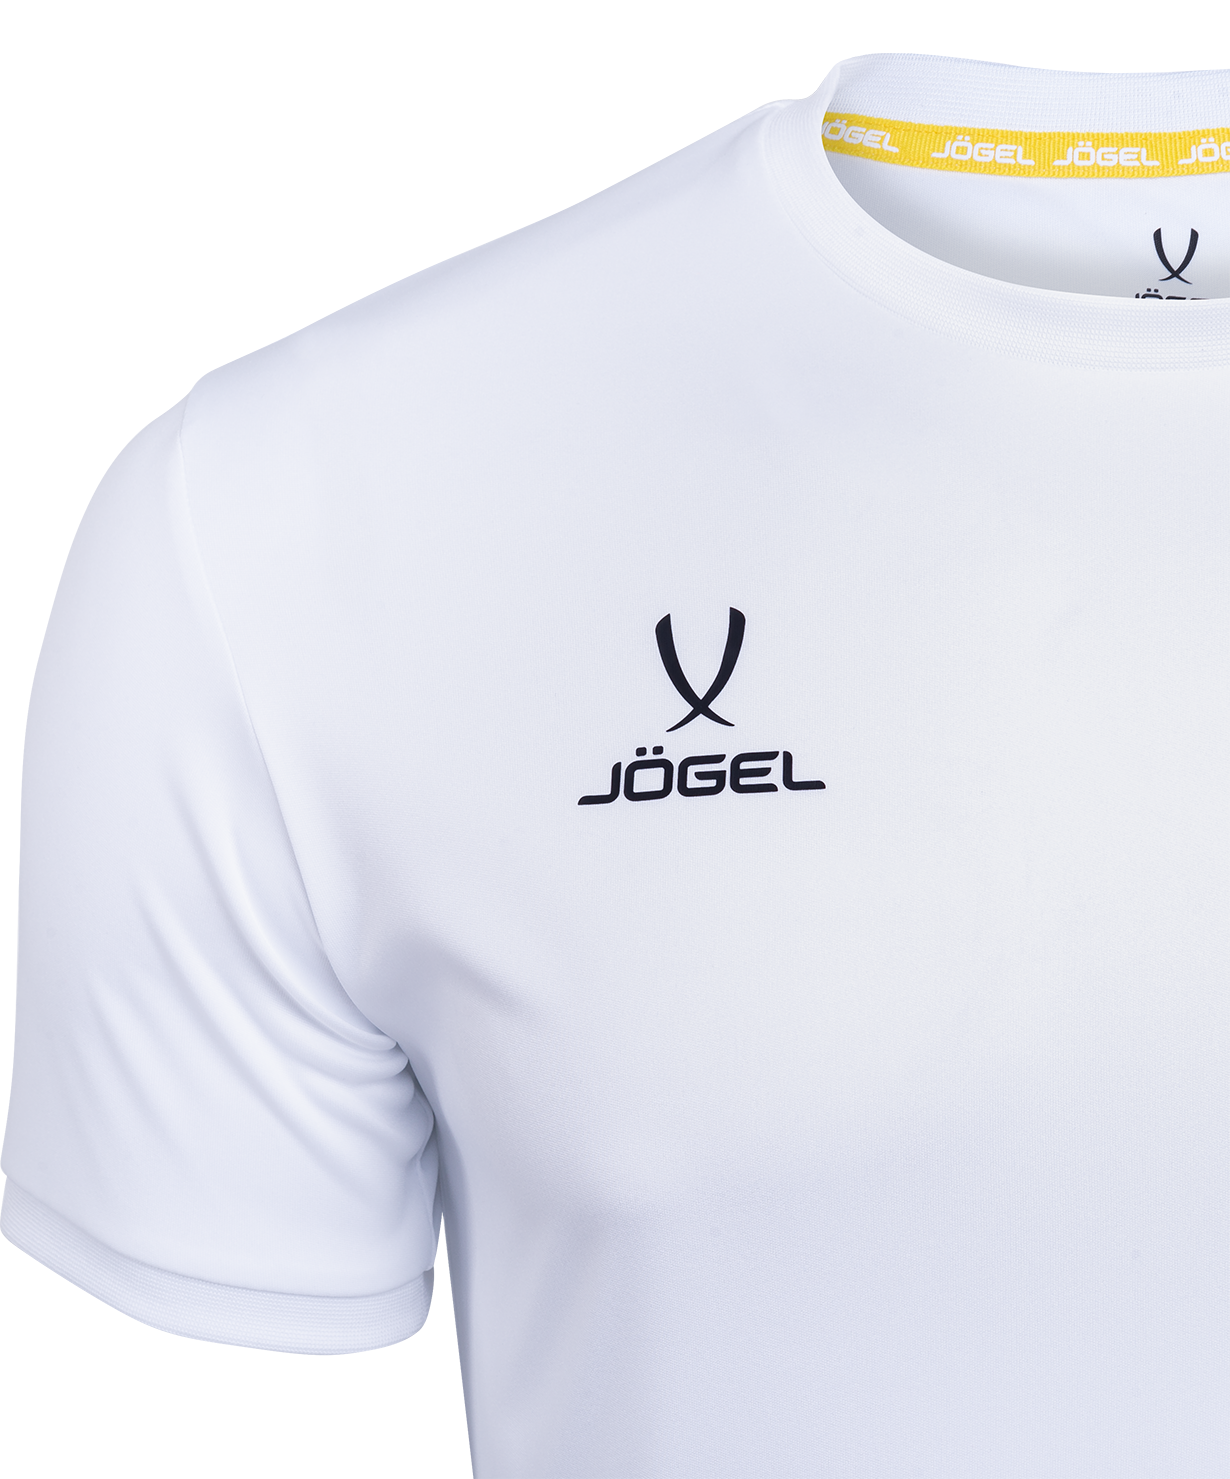 Jogel новая форма. Футболка Jogel Camp Origin. Футболка футбольная Camp Origin. Футболка игровая Jögel Camp Origin Jersey (JFT-1020-K), красный/белый Прайм спорт. Jogel Camp Origin Jersey (JFT-1020), белый/черный, XXL (Р.рус 54-56).